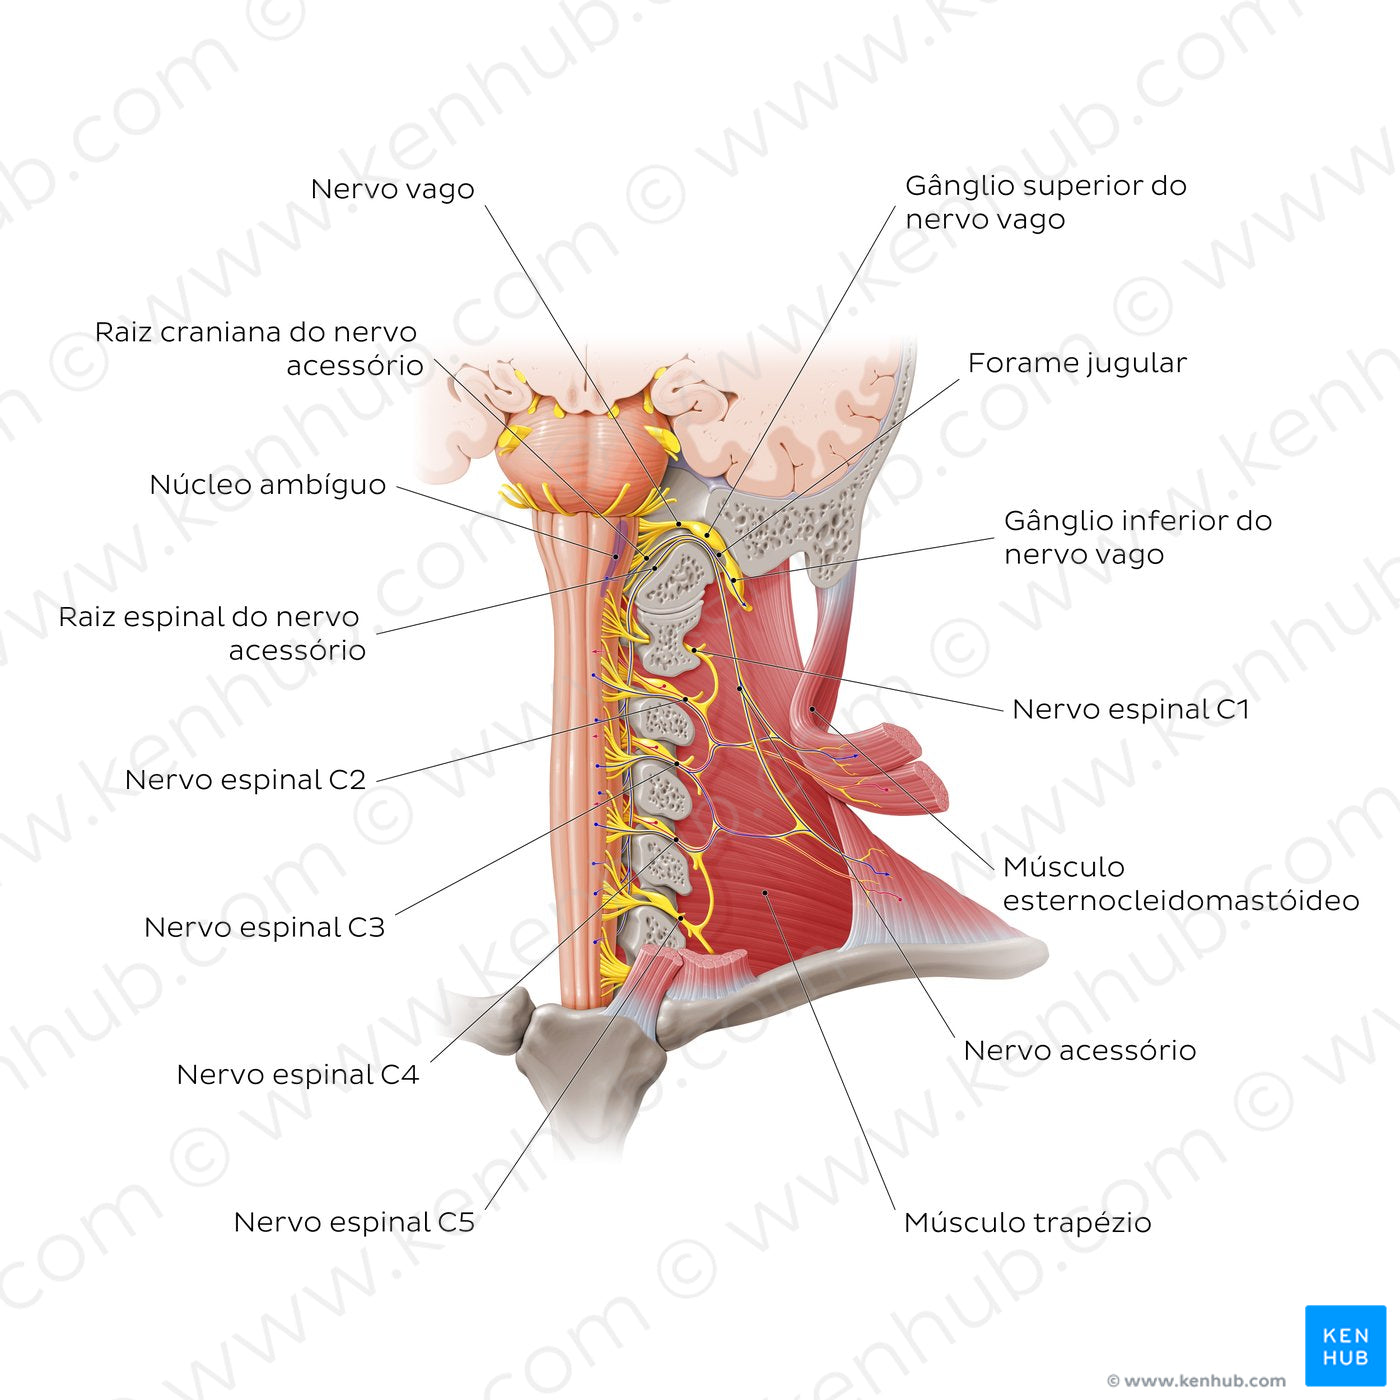 Accessory nerve (Portuguese)